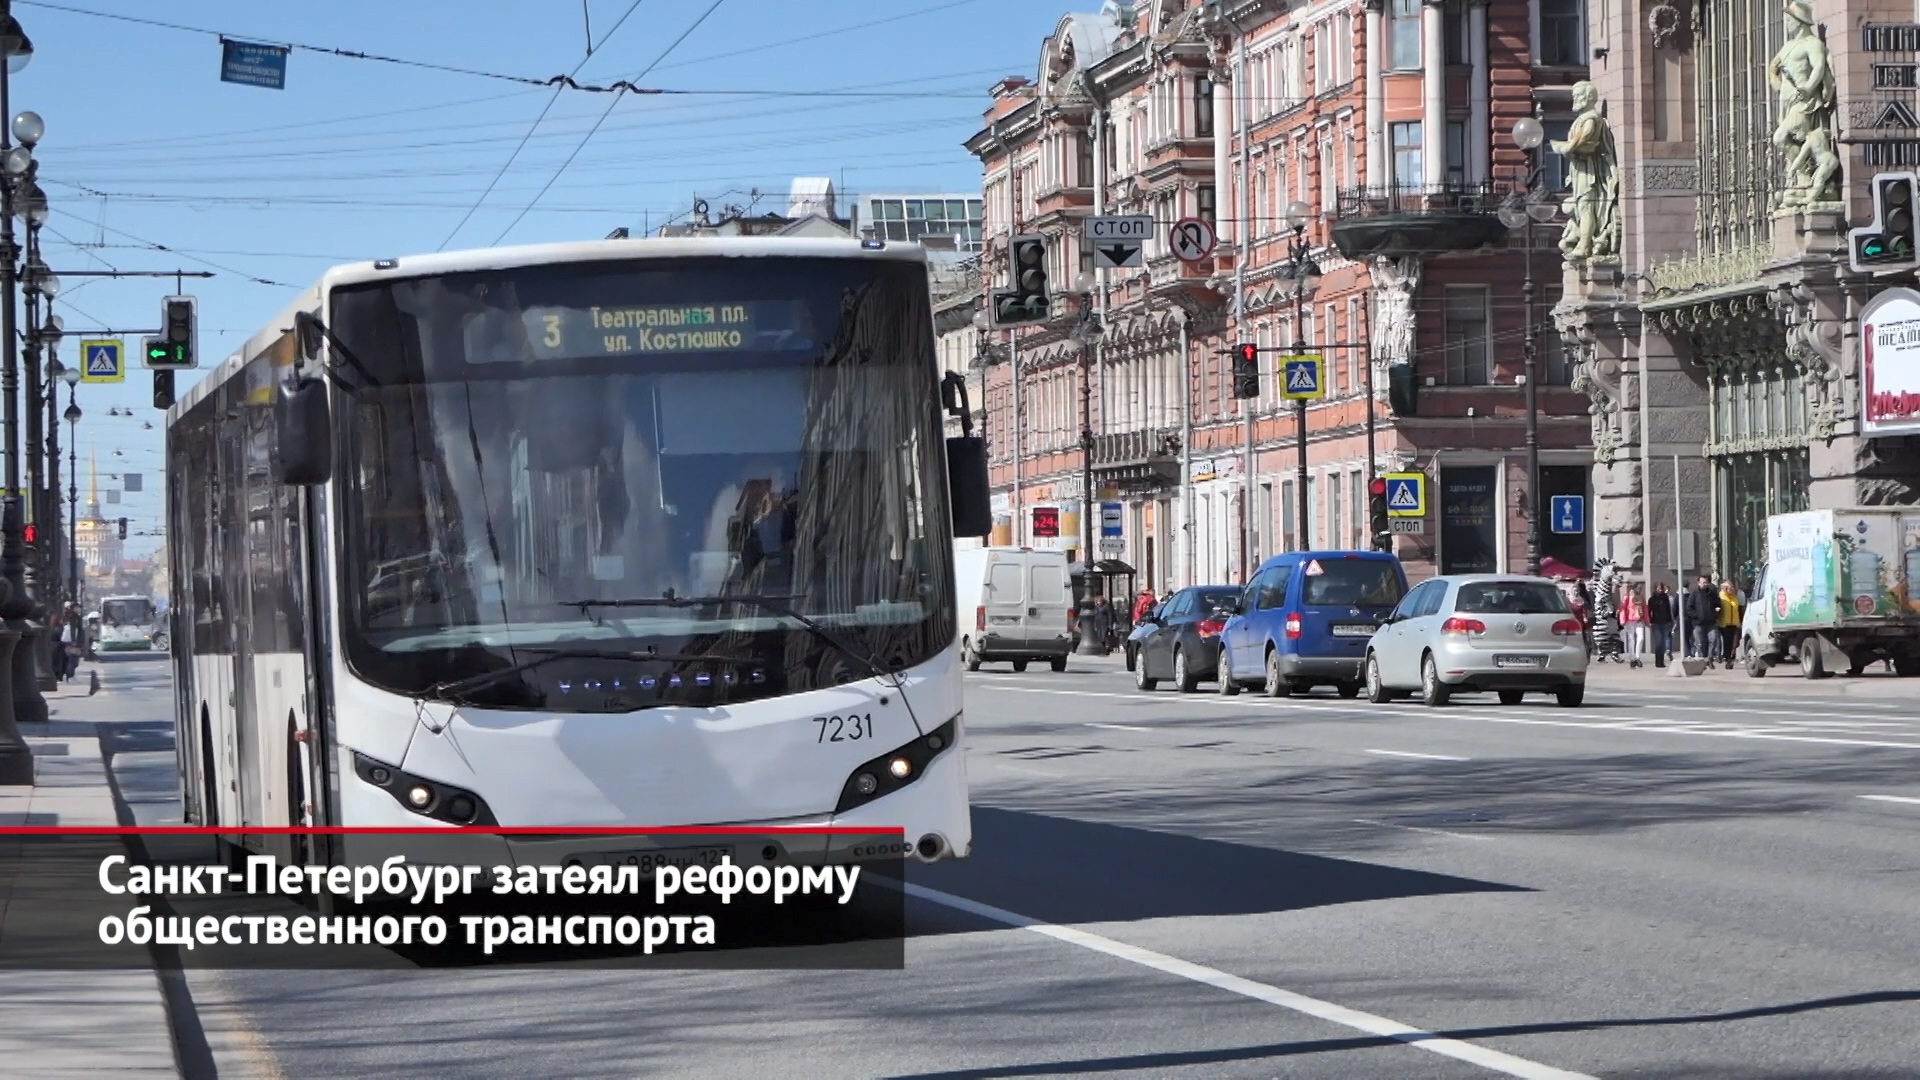 Санкт-Петербург затеял реформу общественного транспорта | Новости с колёс №1945